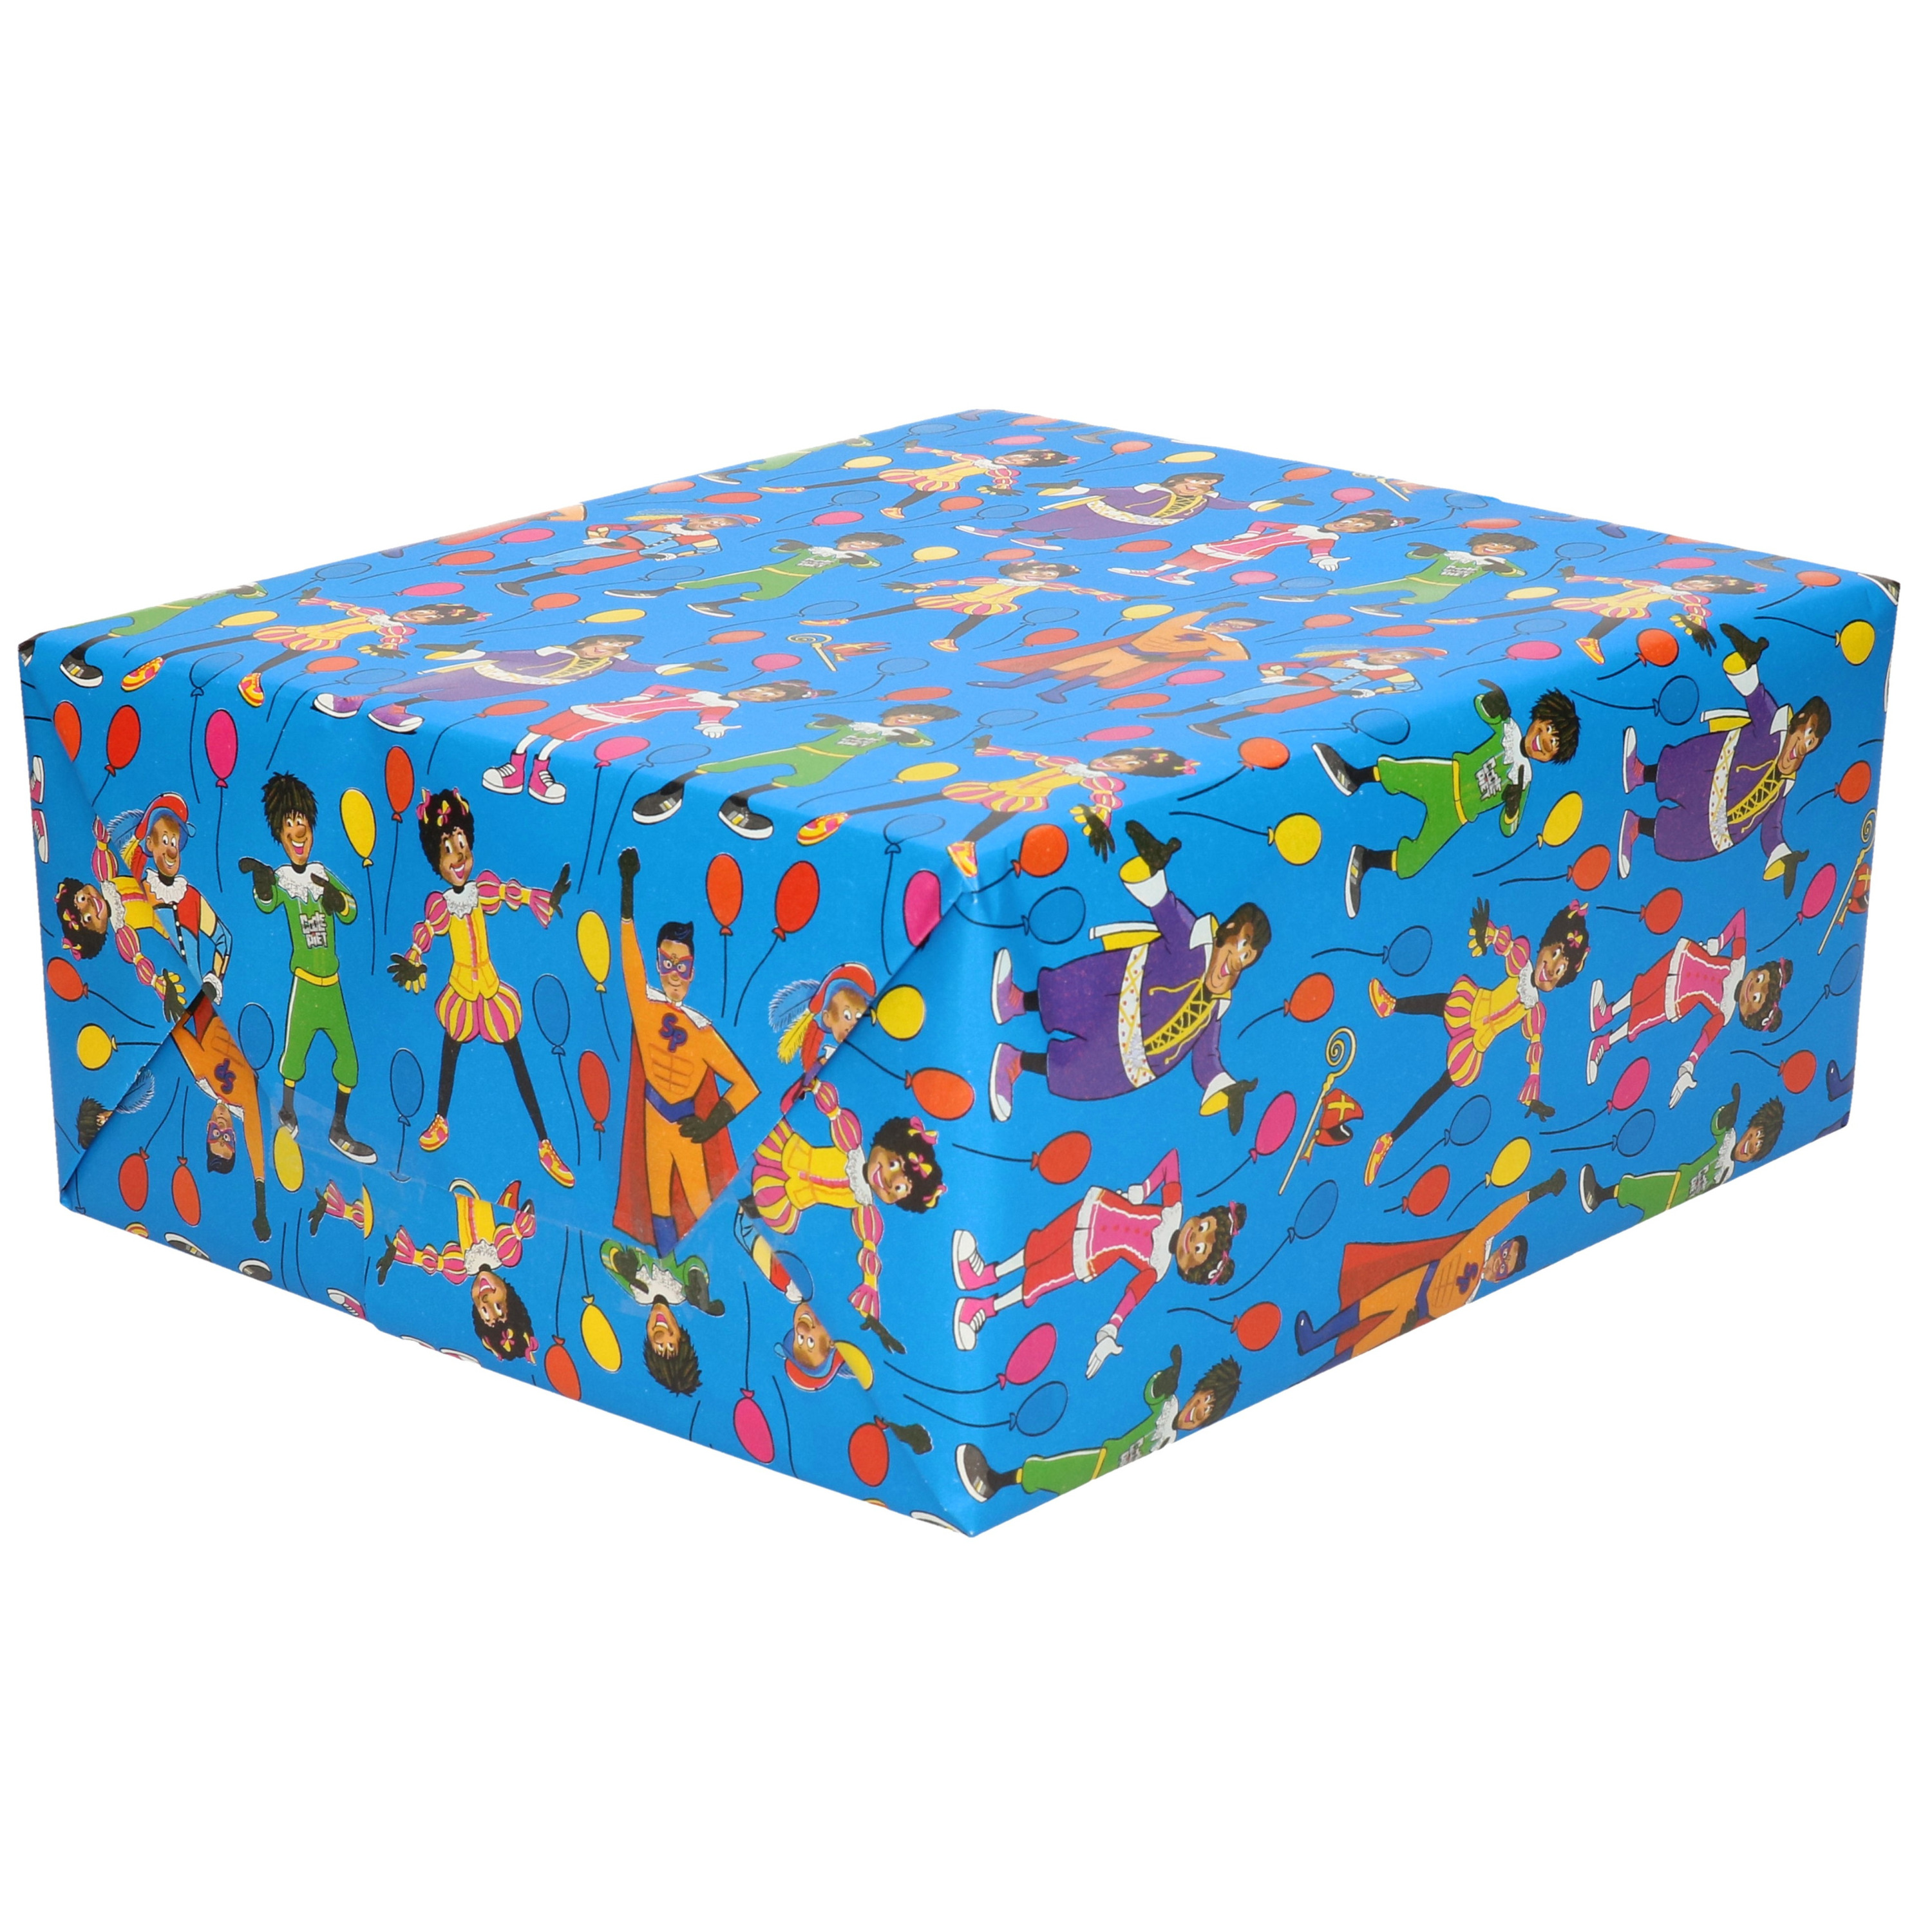 1x Rollen inpakpapier/cadeaupapier Club van Sinterklaas blauw 200 x 70 cm